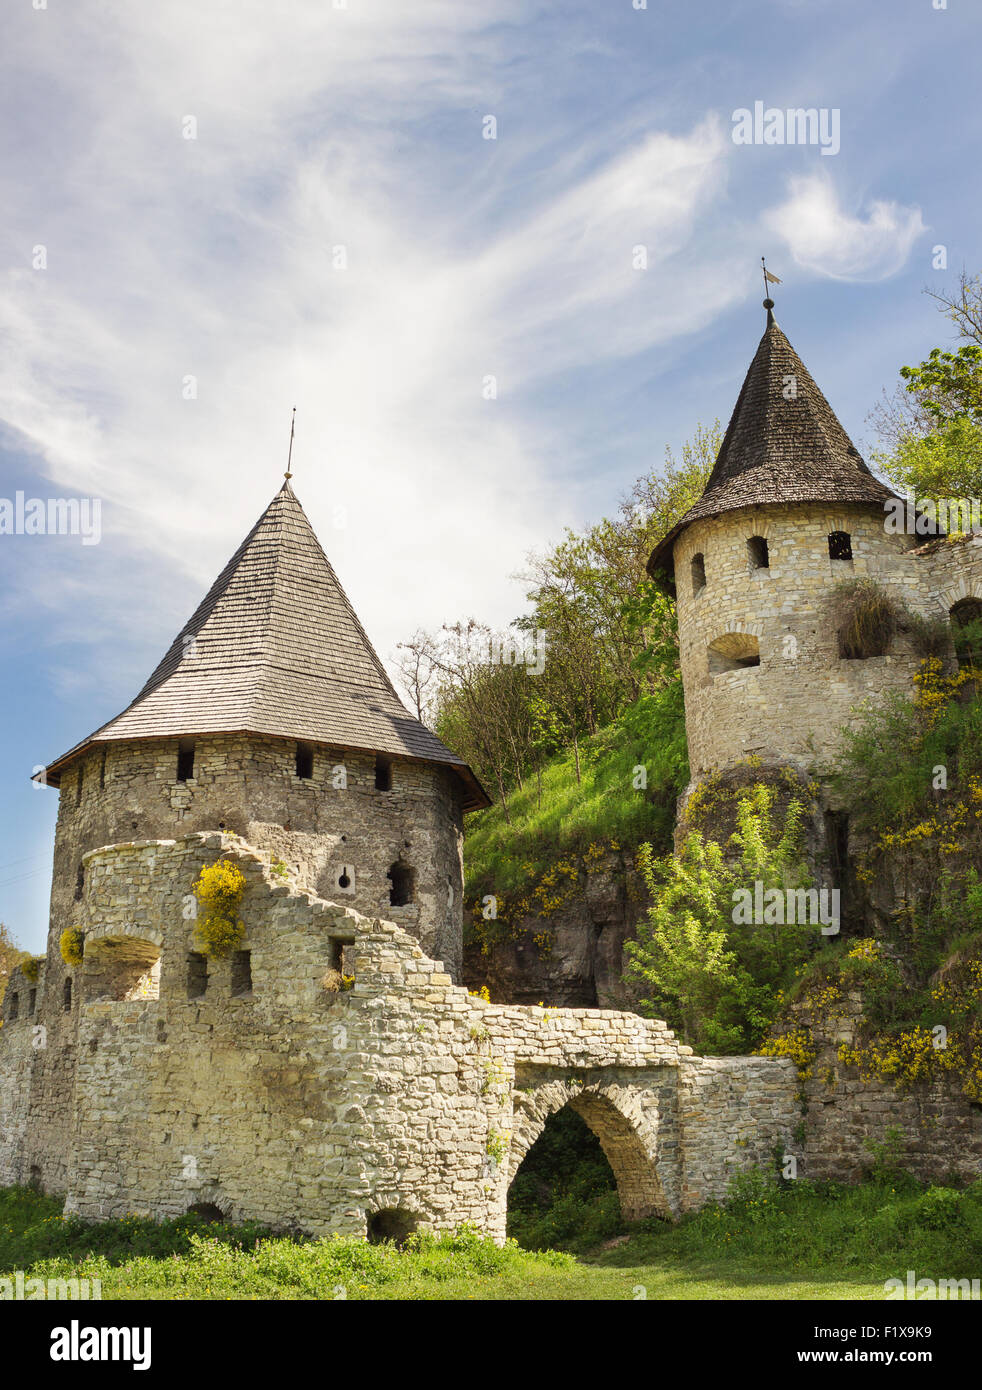 Vecchia Torre del castello medievale. Foto Stock